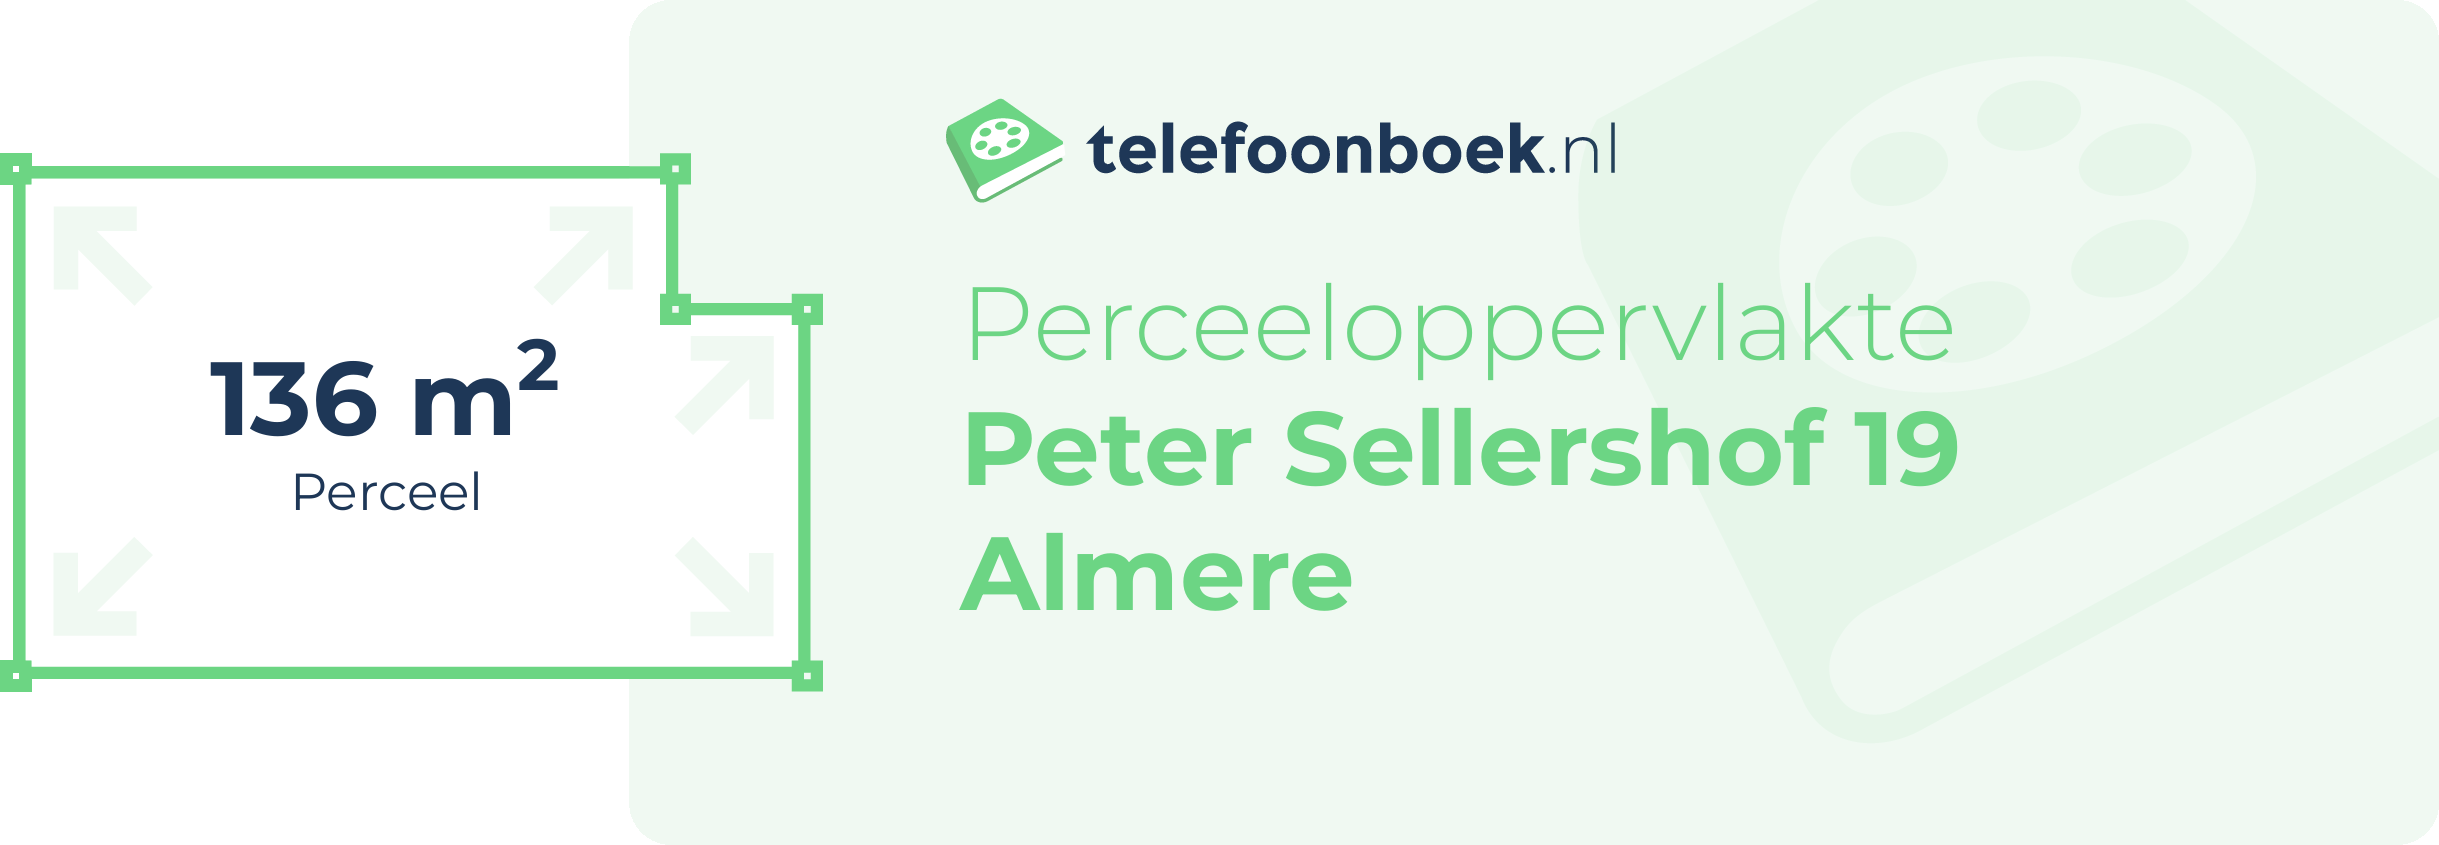 Perceeloppervlakte Peter Sellershof 19 Almere